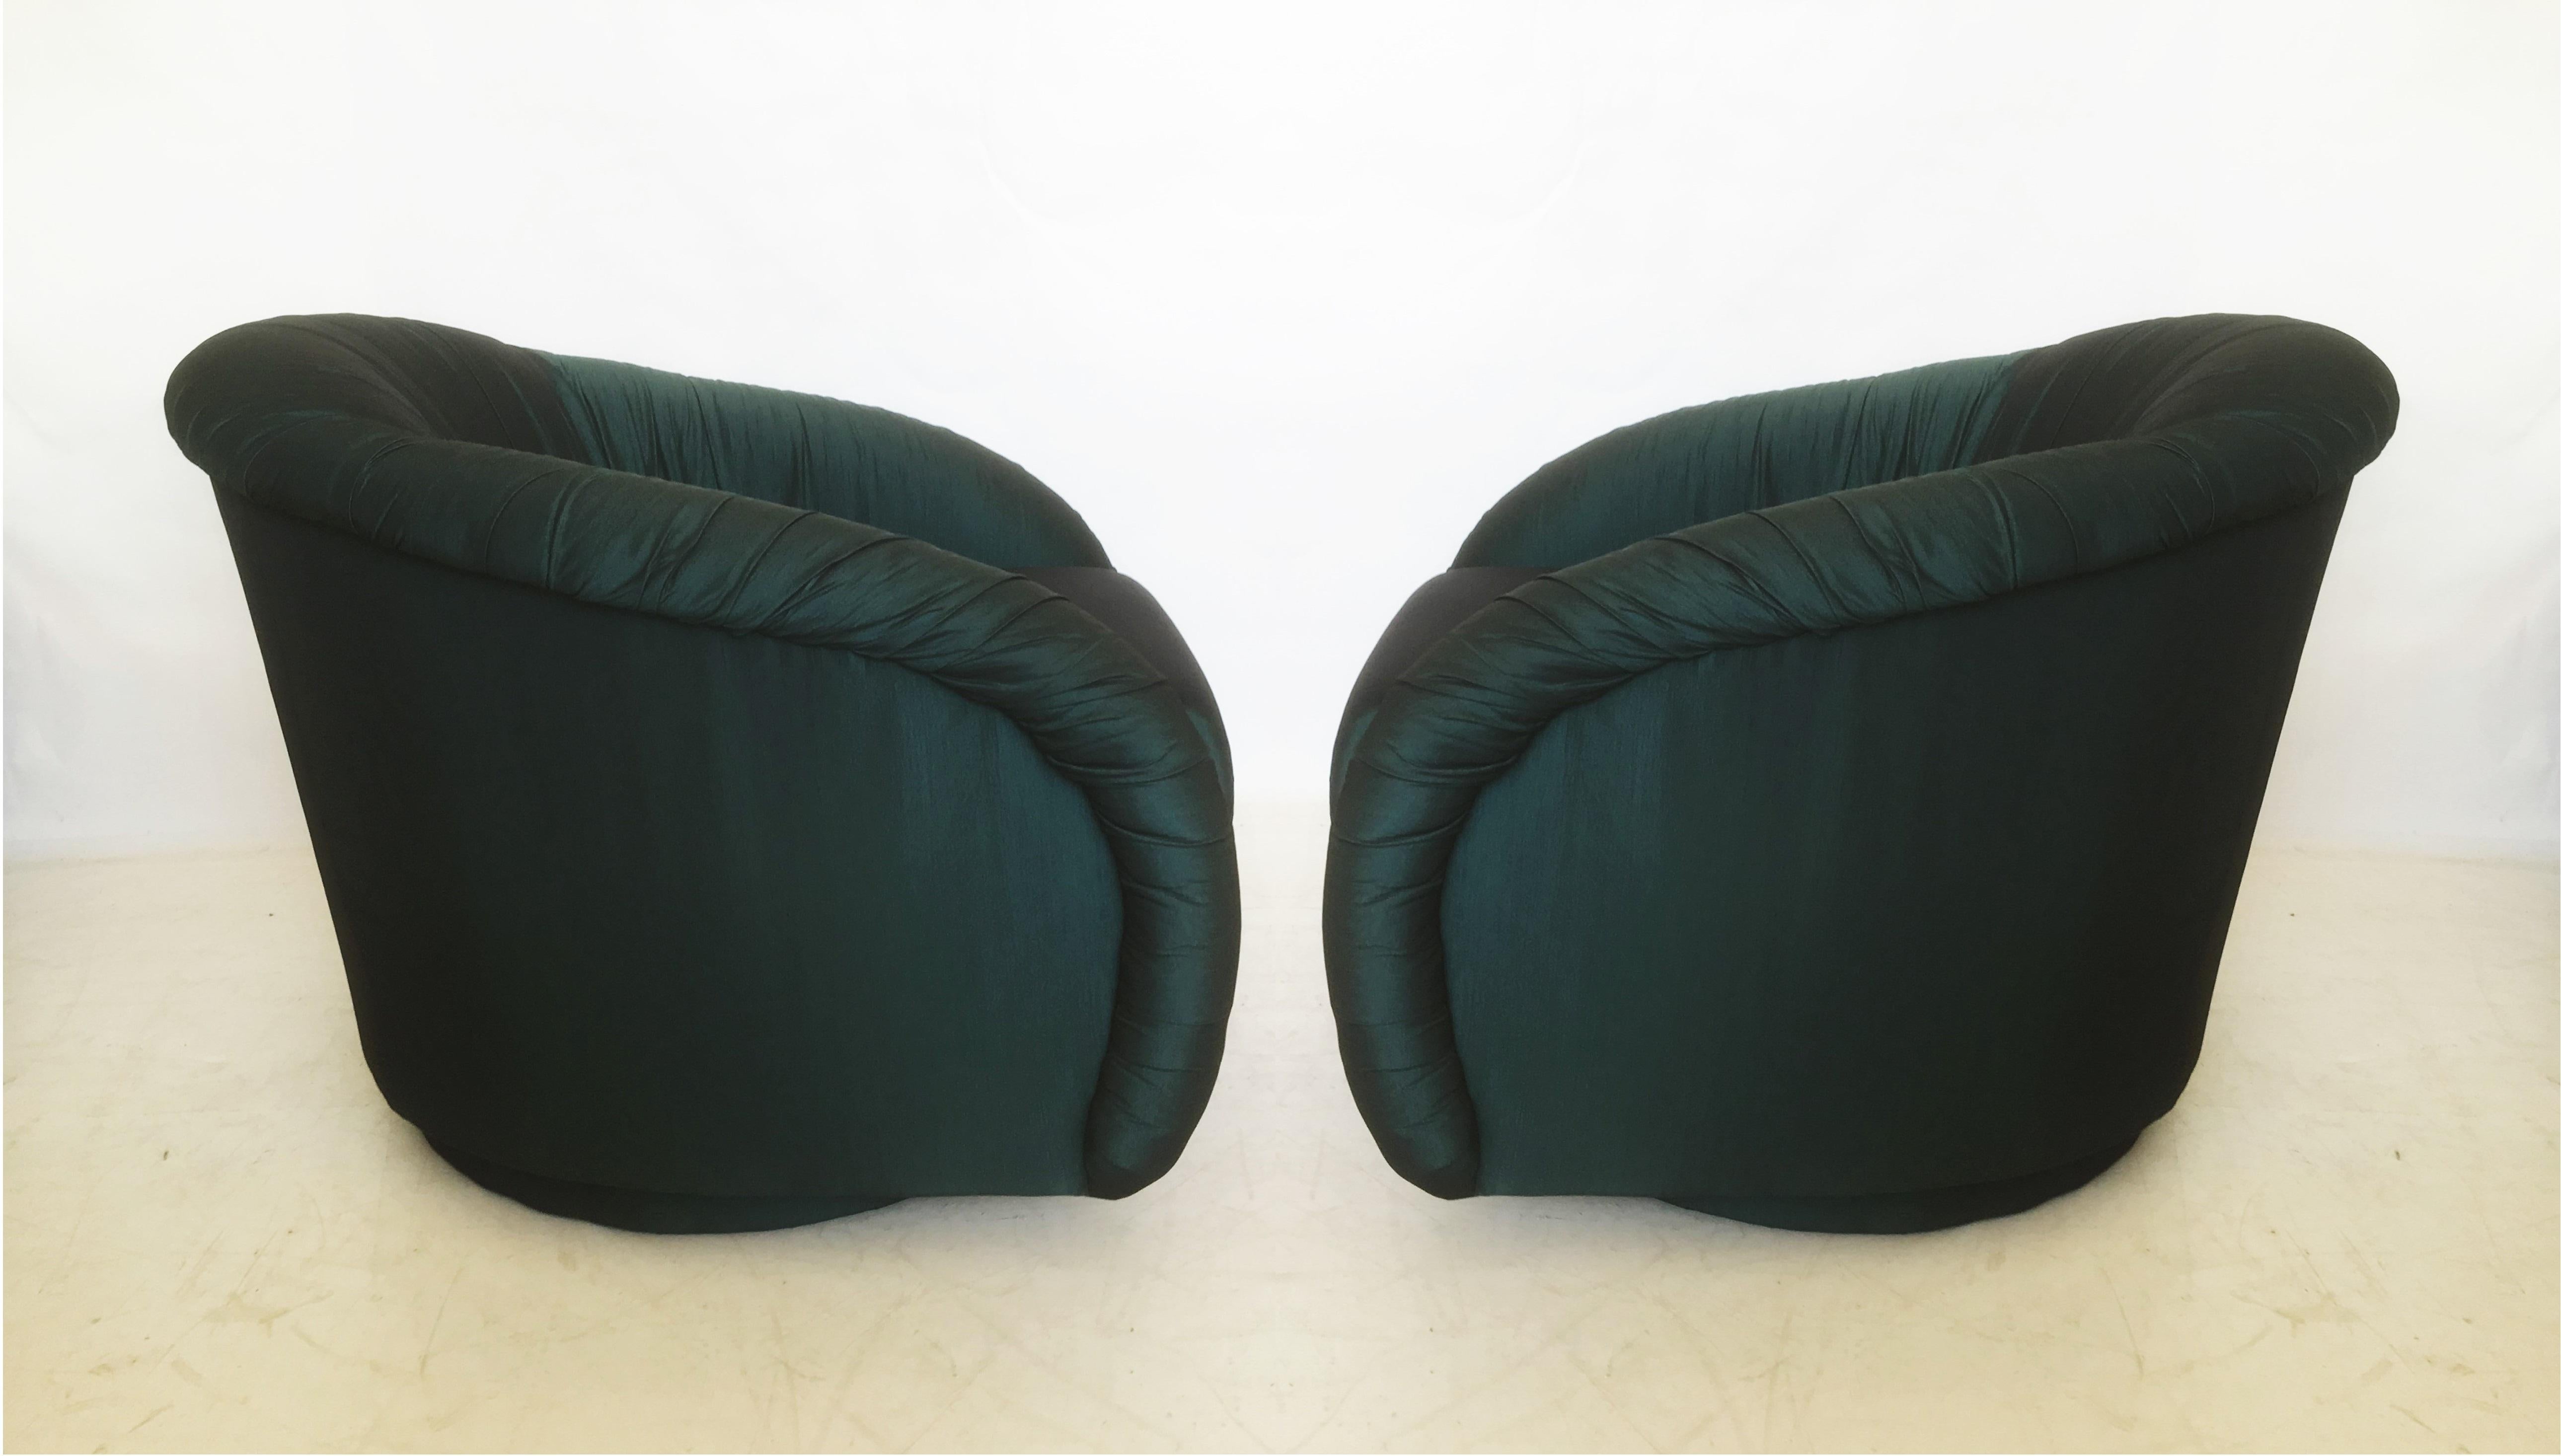 Paire assortie de chaises longues élégantes et très confortables, de style Milo Baughman, datant du début des années 1980. Chaque fauteuil pivotant rembourré sur mesure, style dossier en forme de tonneau, est recouvert d'un magnifique tissu vert.